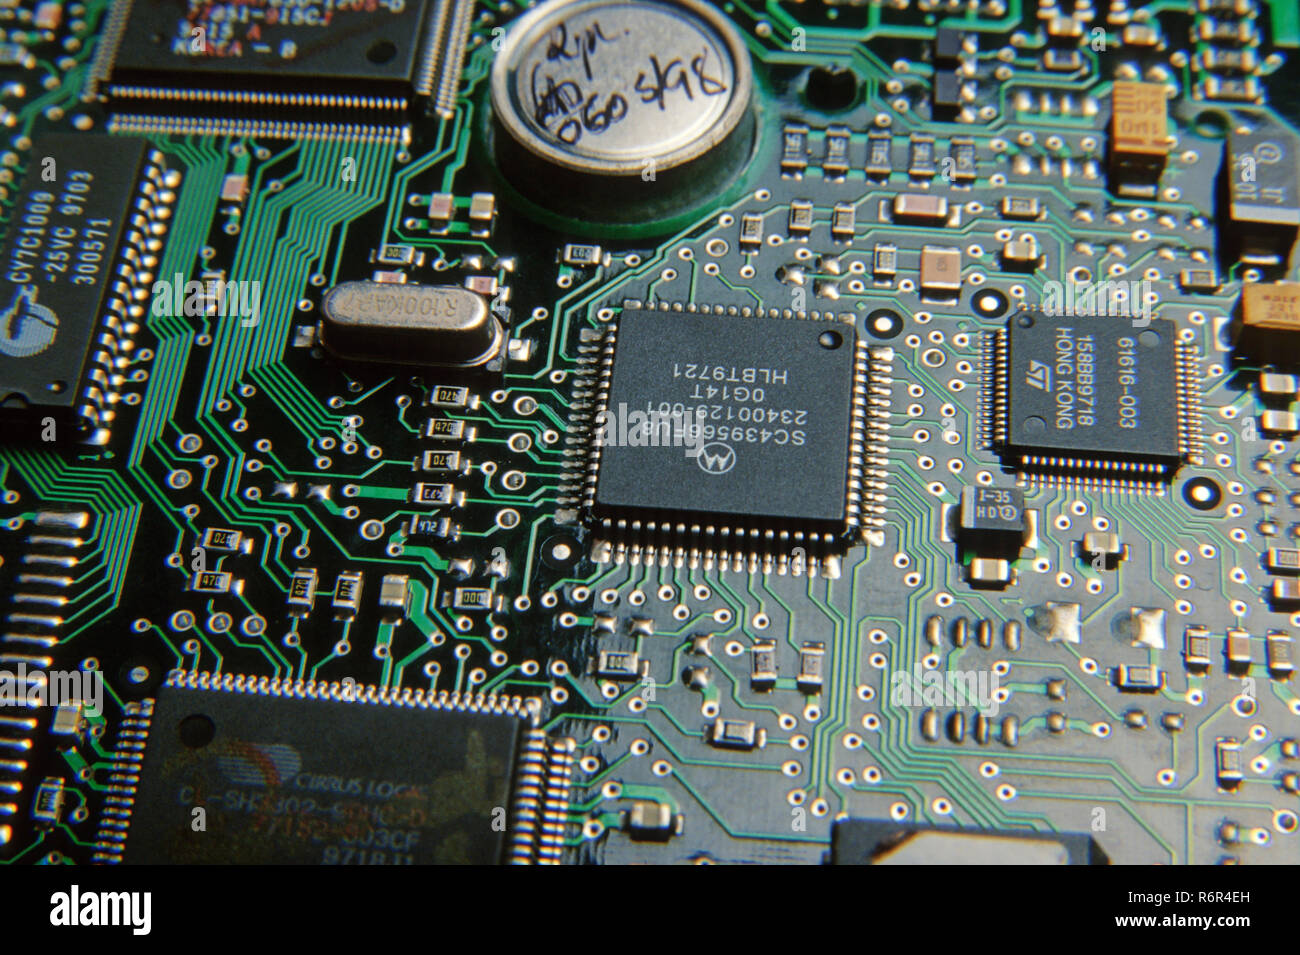 computer hard disk circuit, mumbai bombay, maharashtra, india Stock Photo